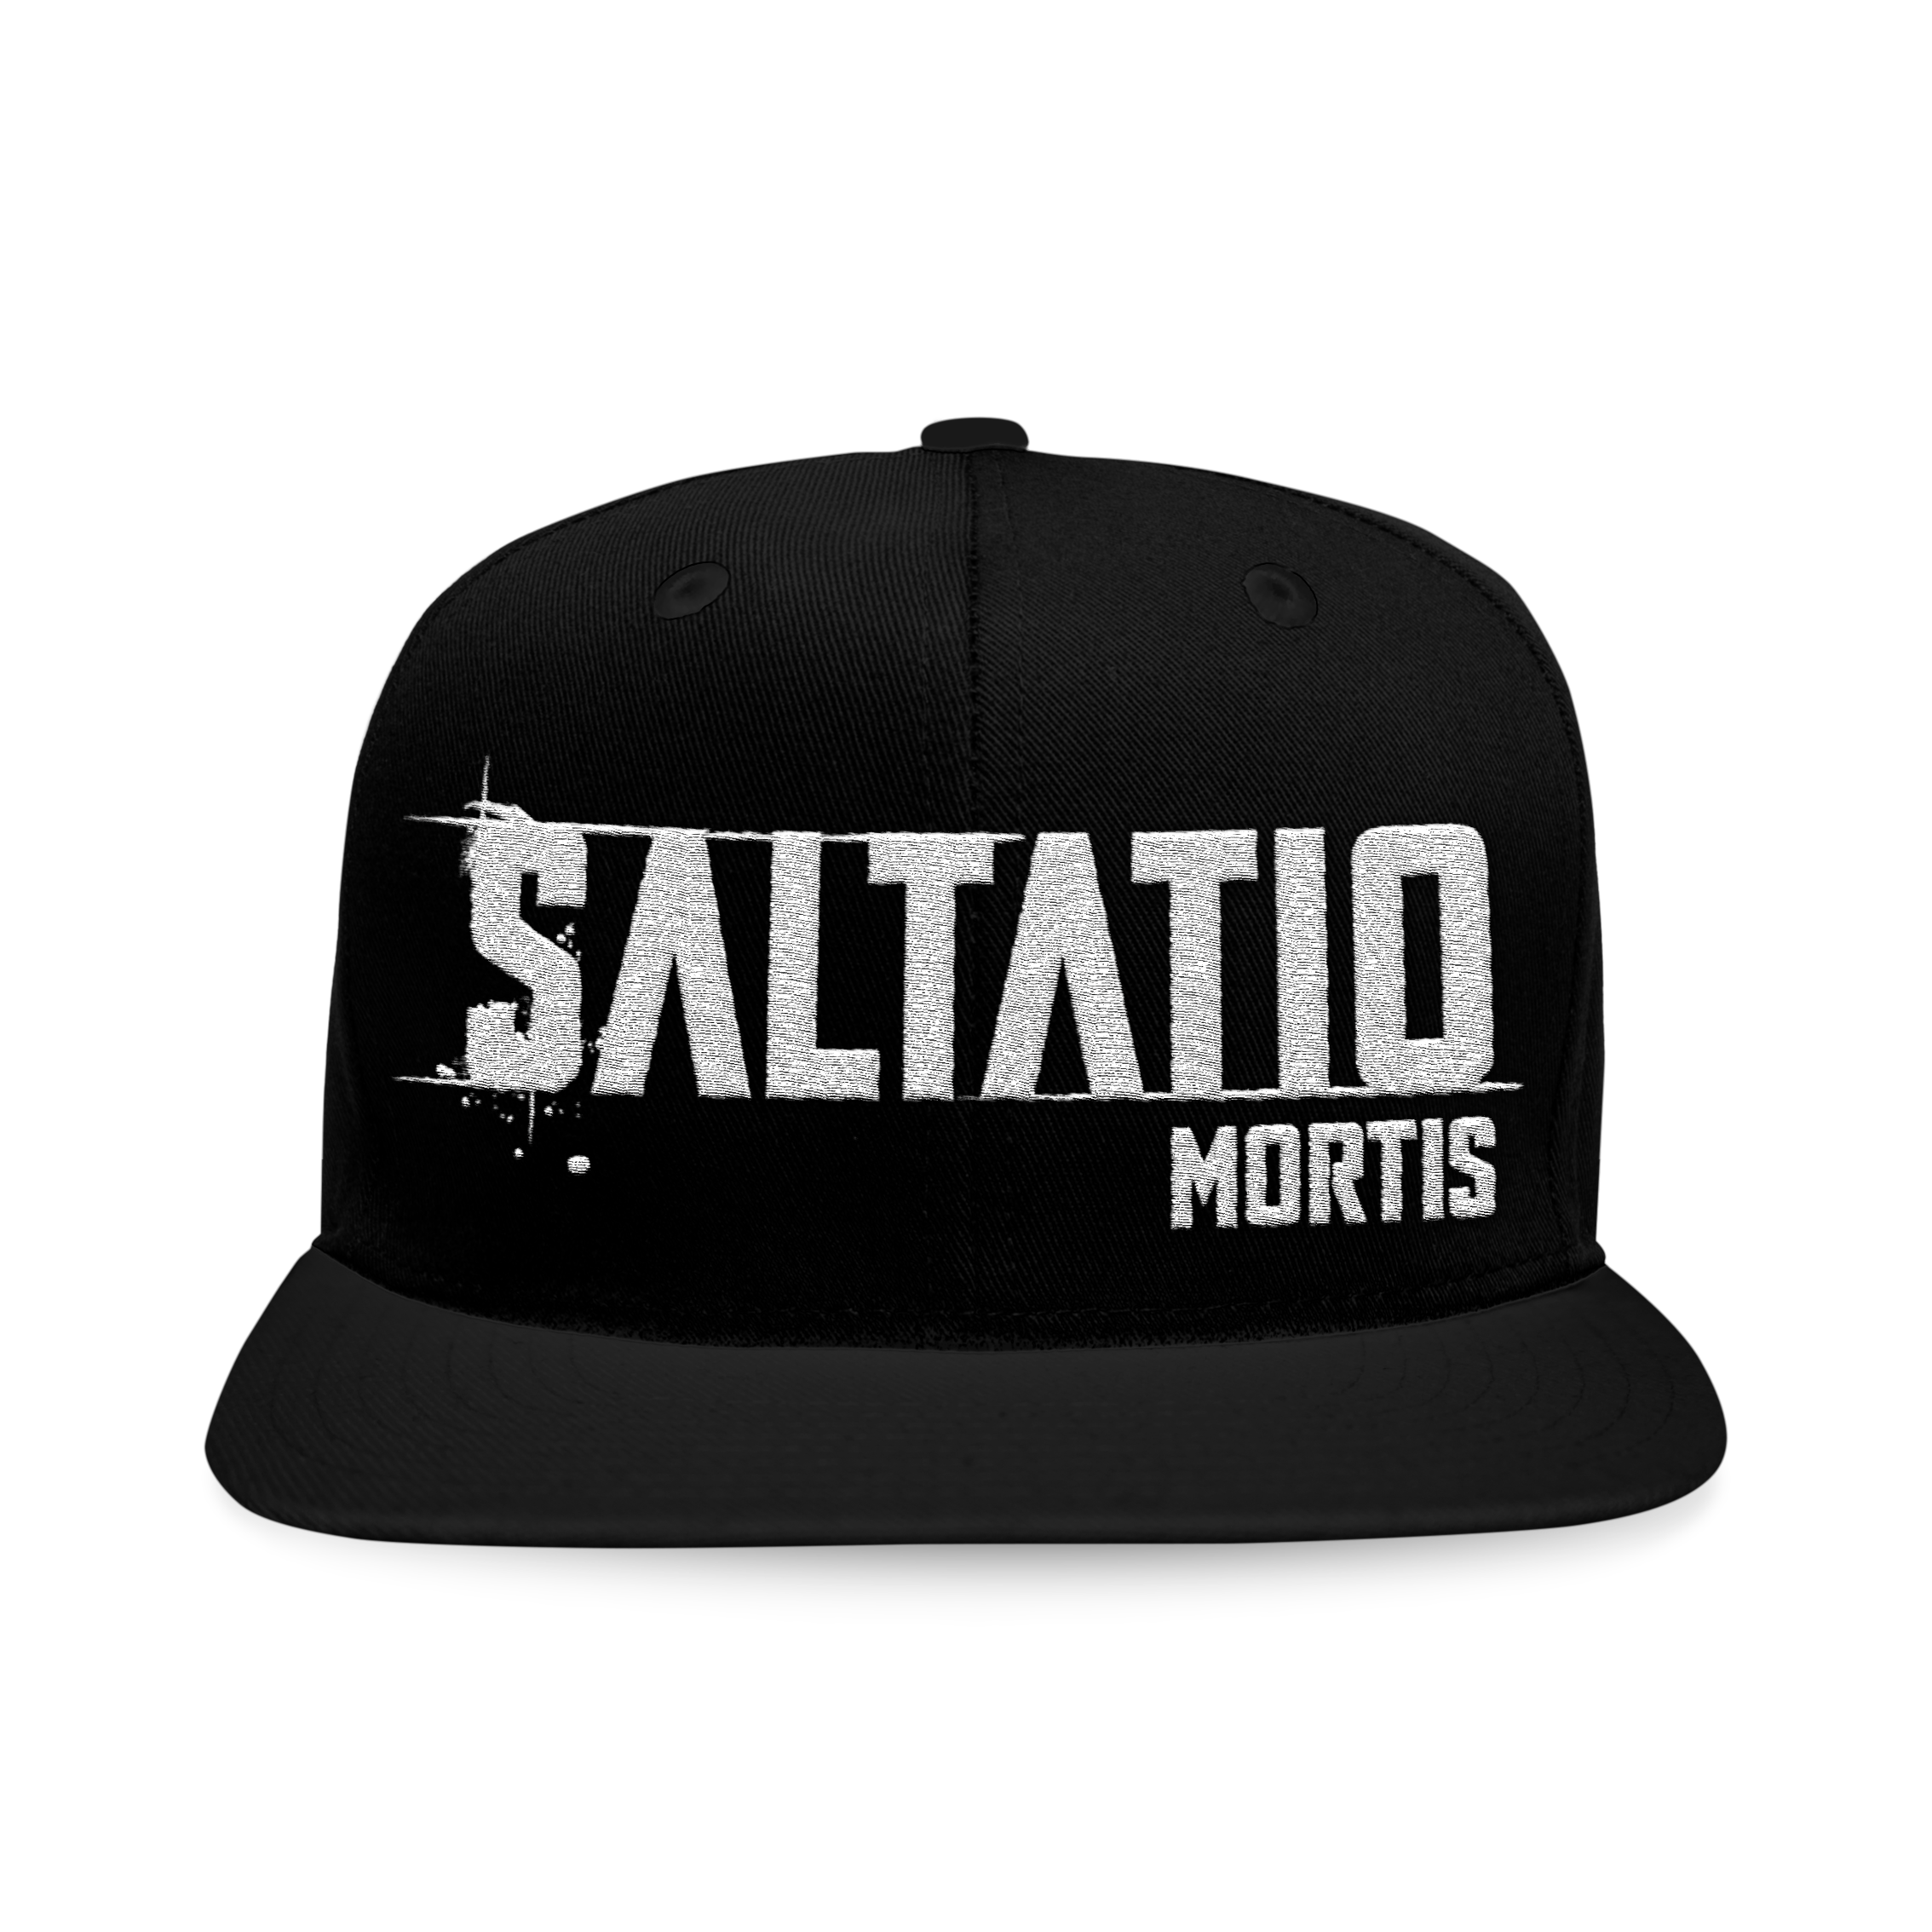 https://images.bravado.de/prod/product-assets/saltatio-mortis/saltatio-mortis/products/501673/web/370068/image-thumb__370068__3000x3000_original/Saltatio-Mortis-Saltatio-Mortis-Cap-schwarz-501673-370068.df031bde.png